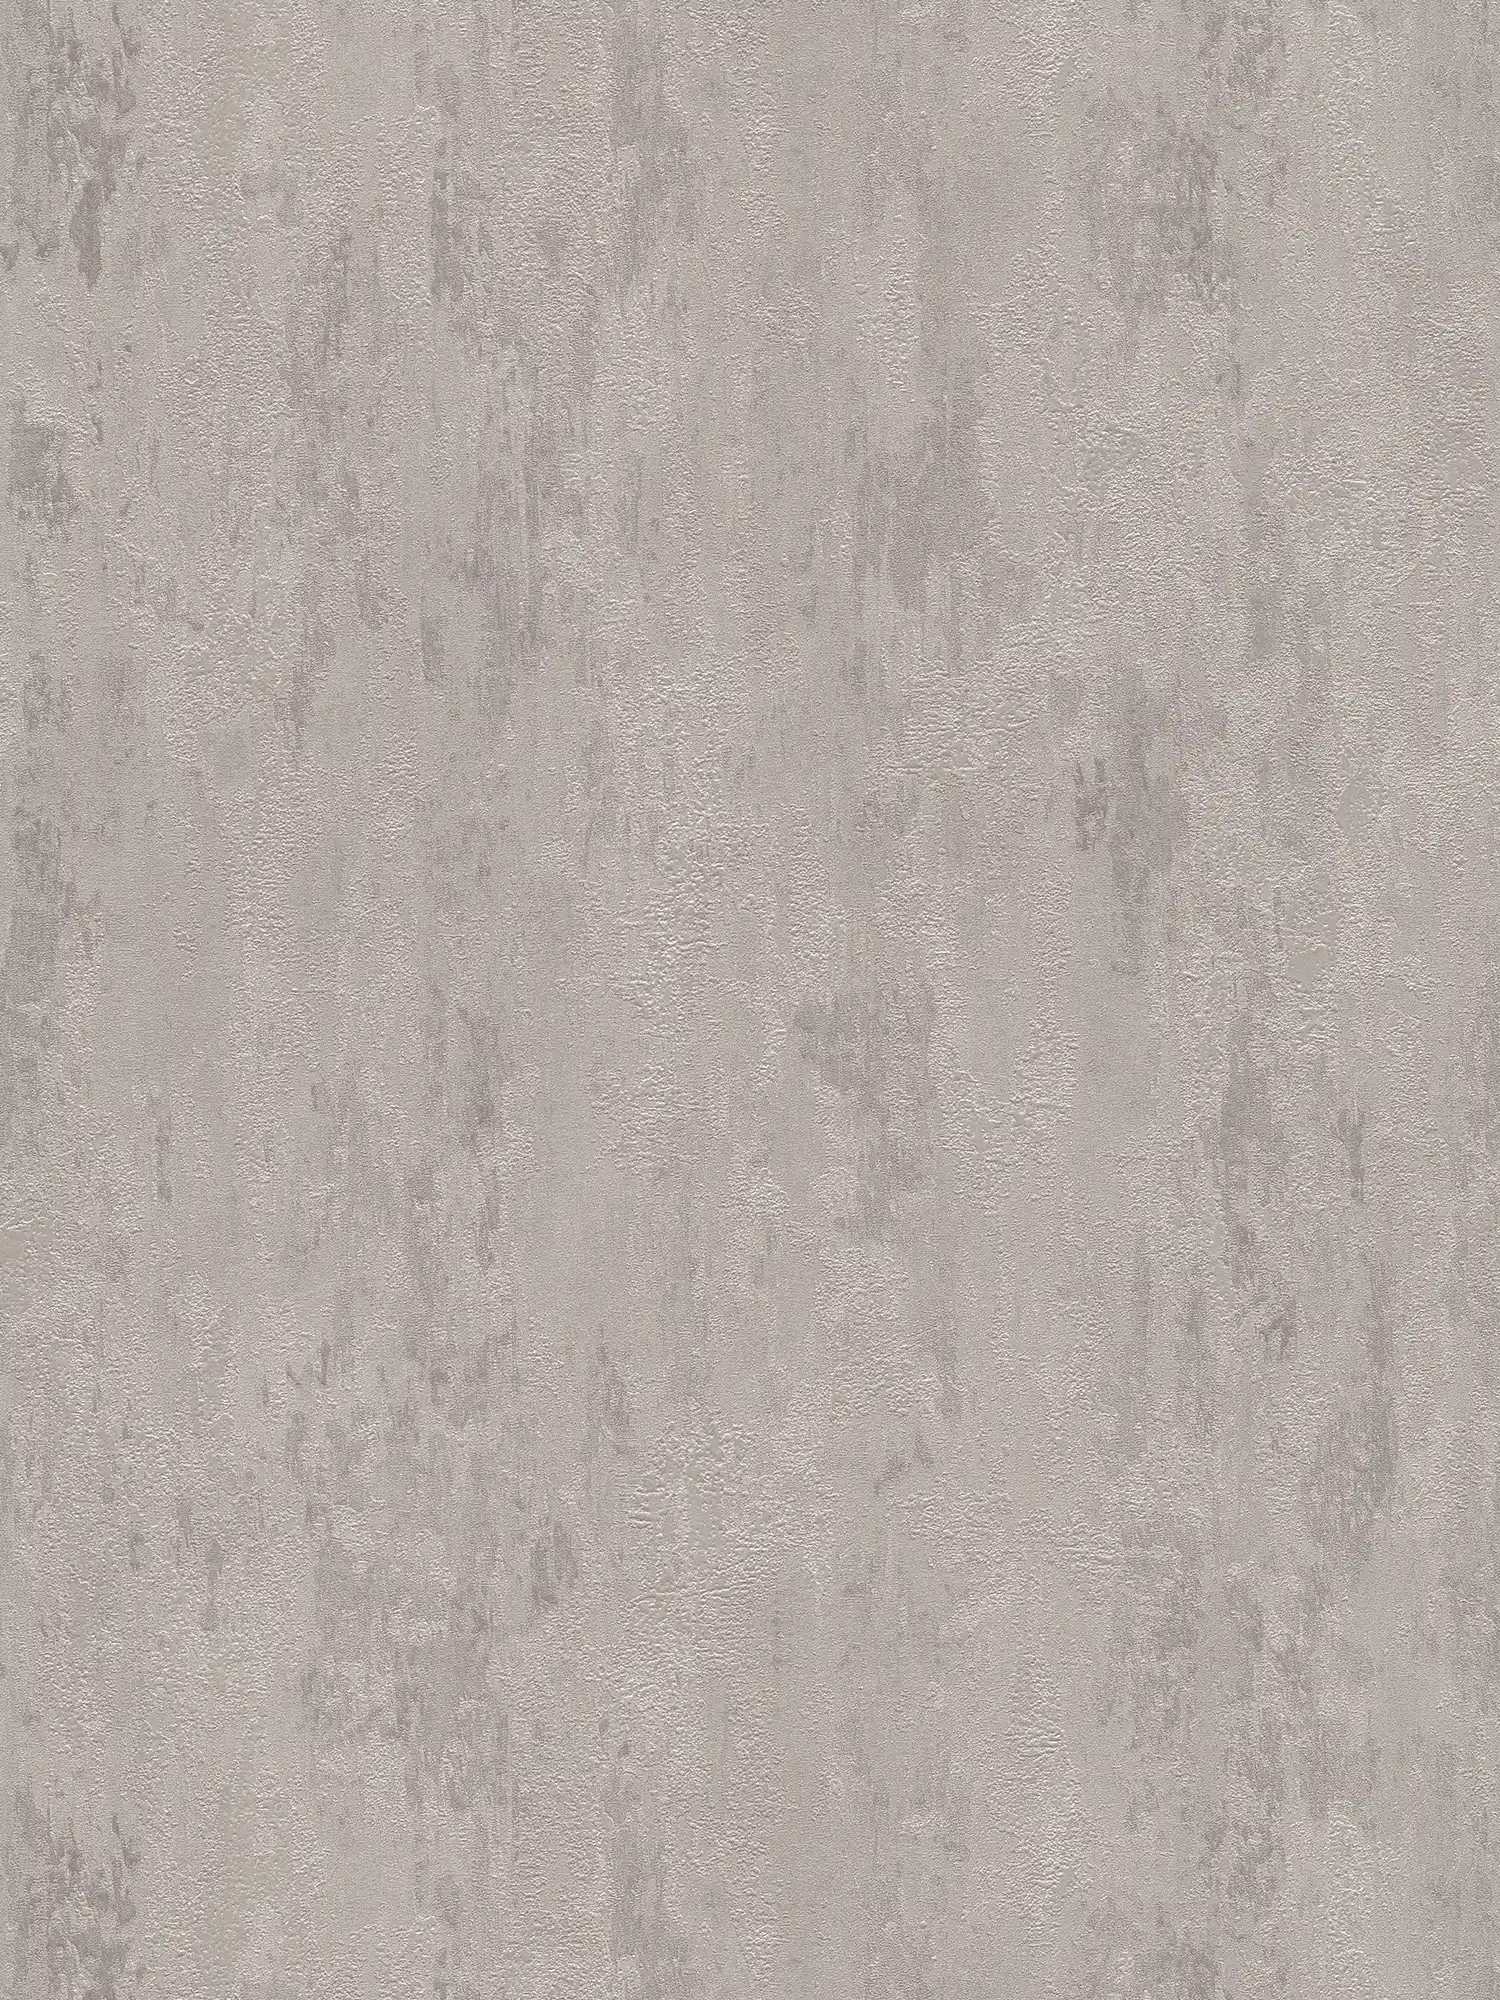 Carta da parati in stile industriale con effetto texture - crema, grigio, metallizzato
